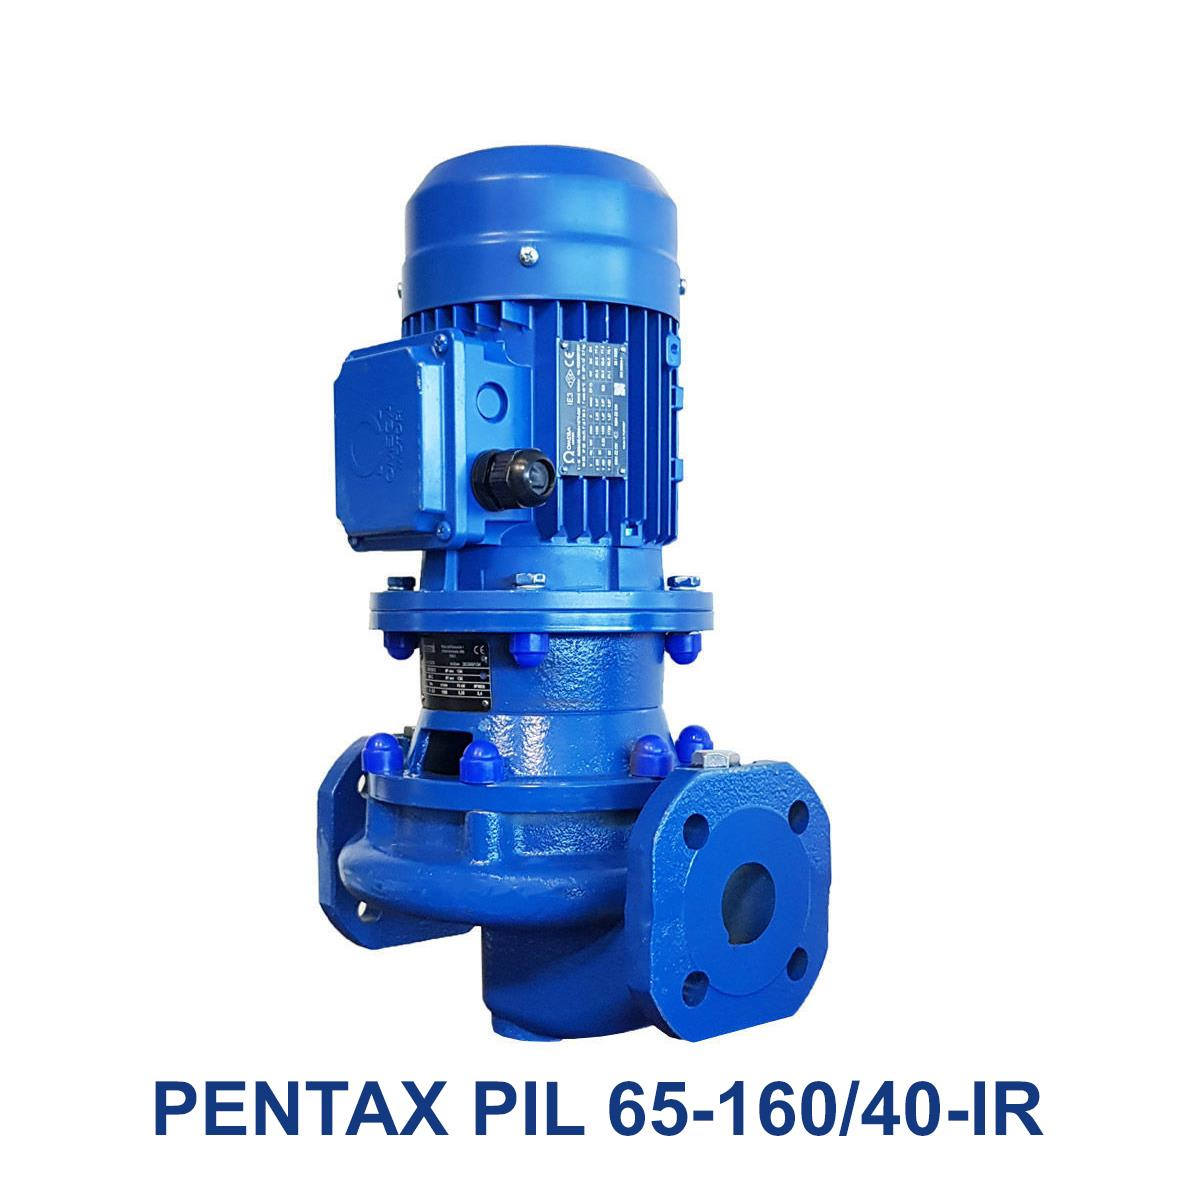 PENTAX-PIL-65-160-40-IR